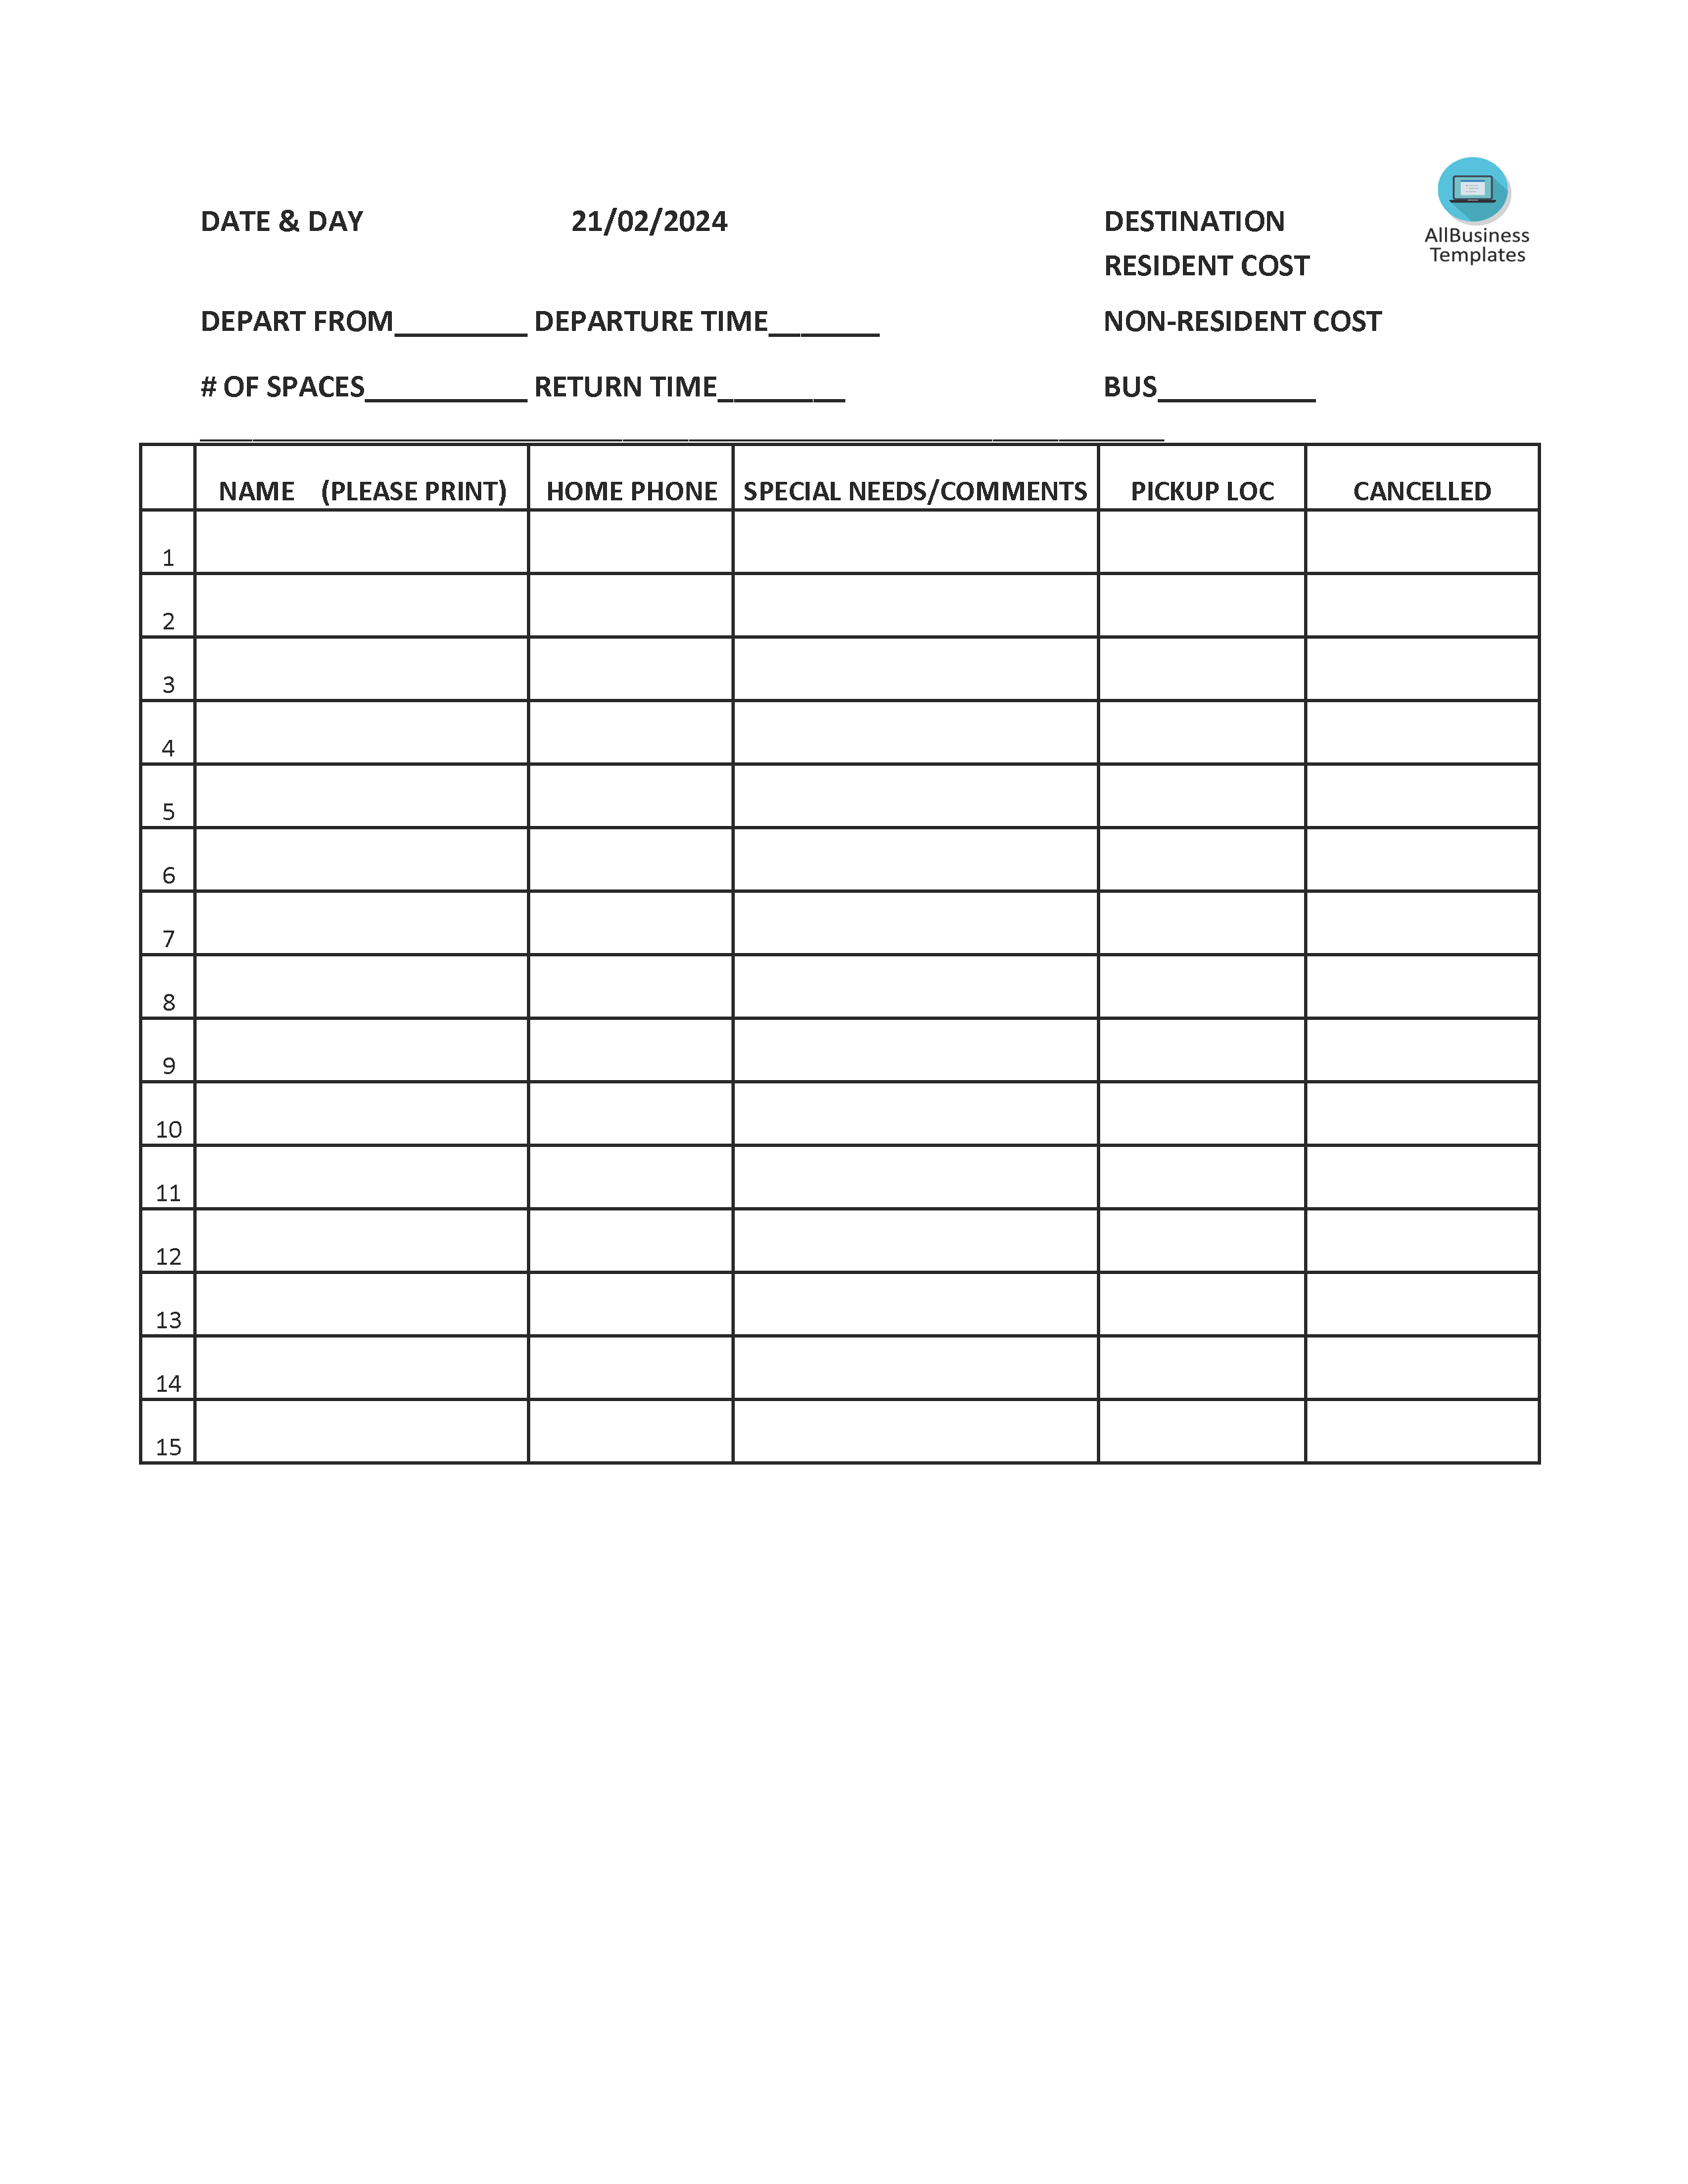 Sign-up Sheet worksheet 模板